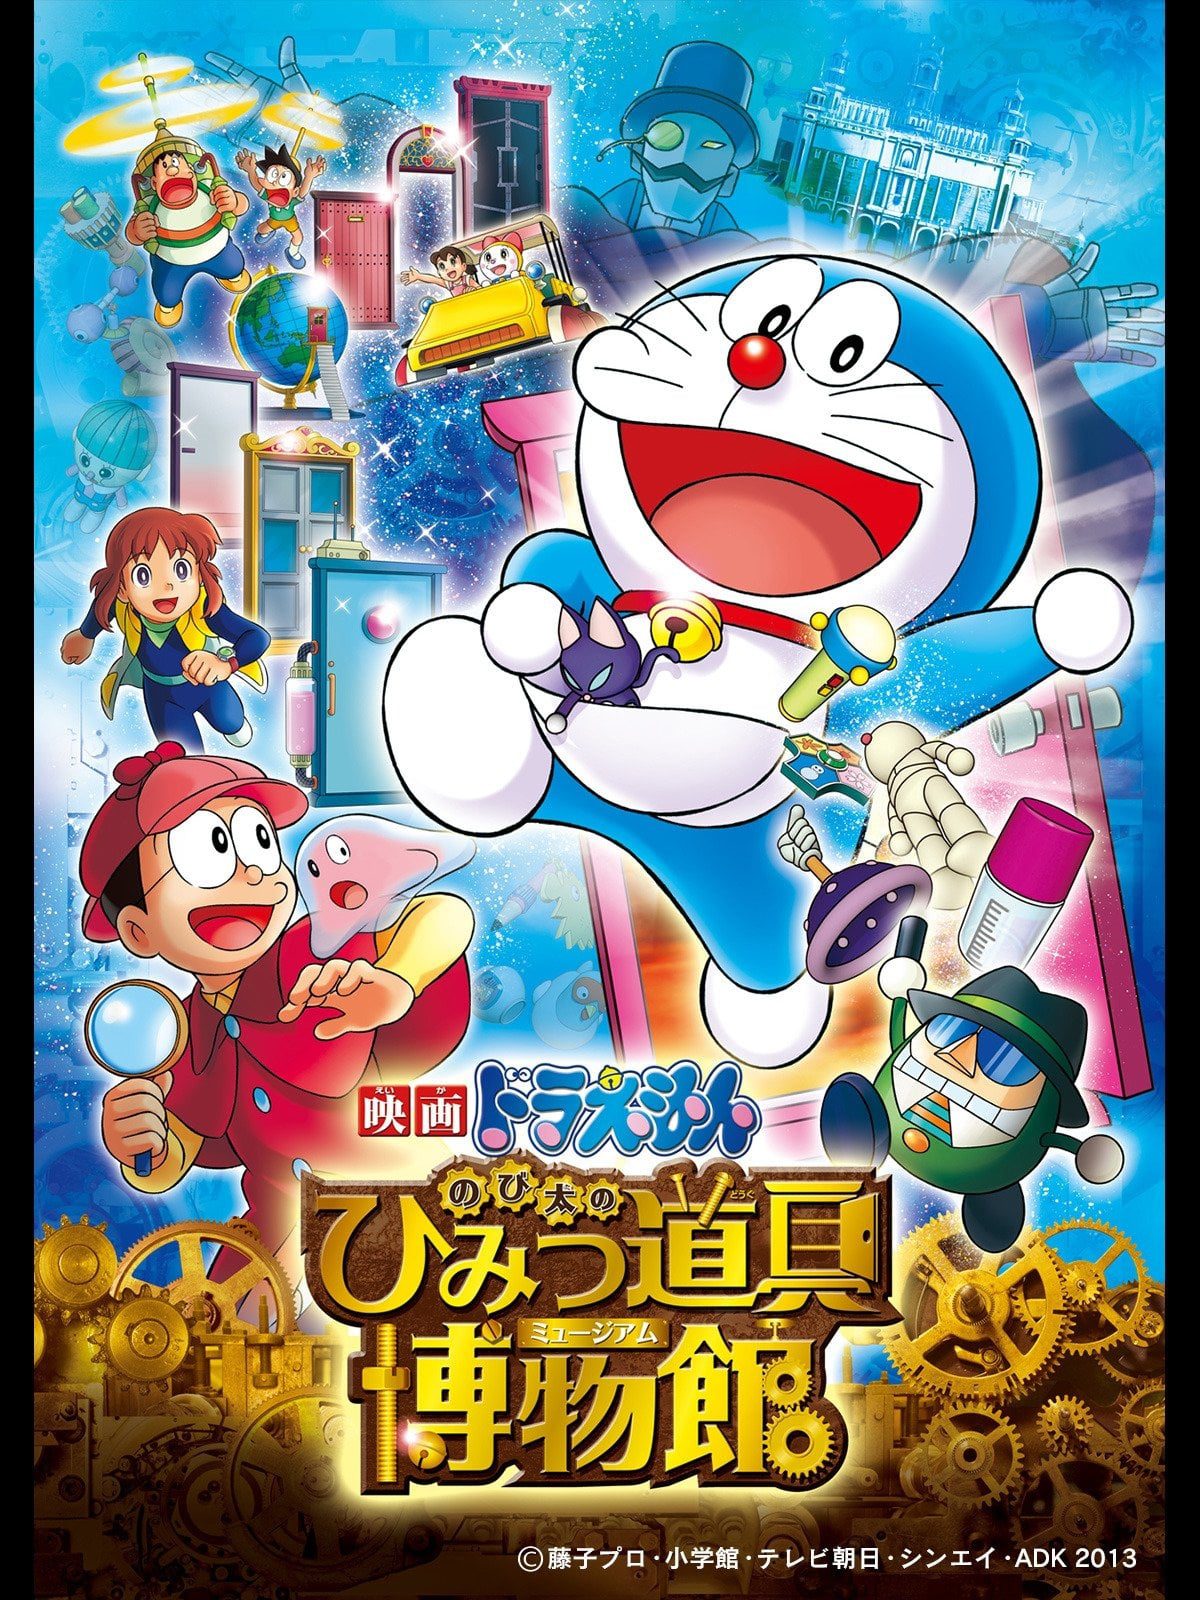 ดูหนังออนไลน์ฟรี Doraemon: Nobita’s Secret Gadget Museum